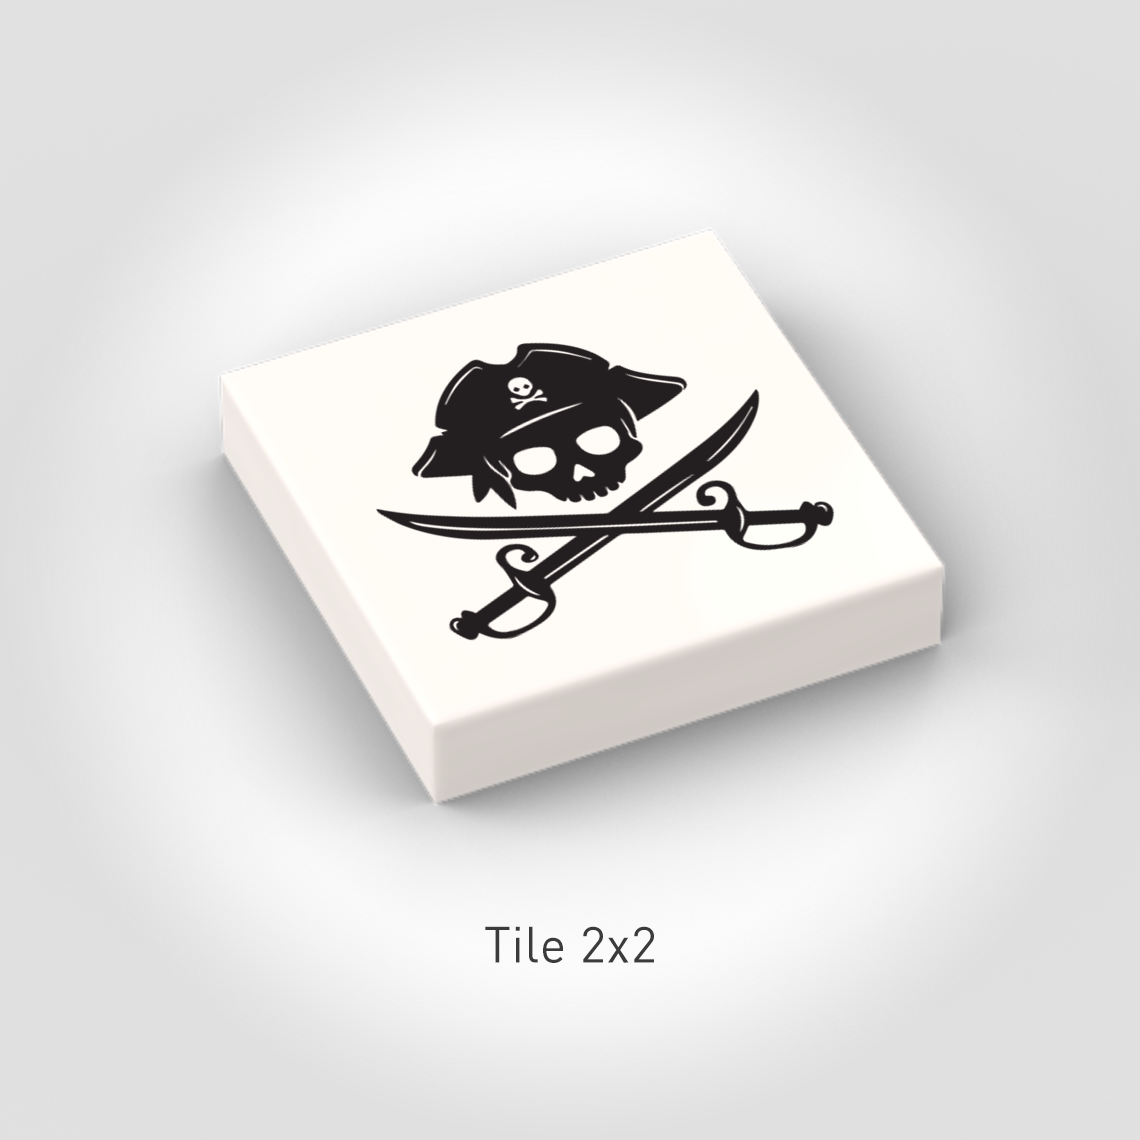 Tile Pirate - Skull